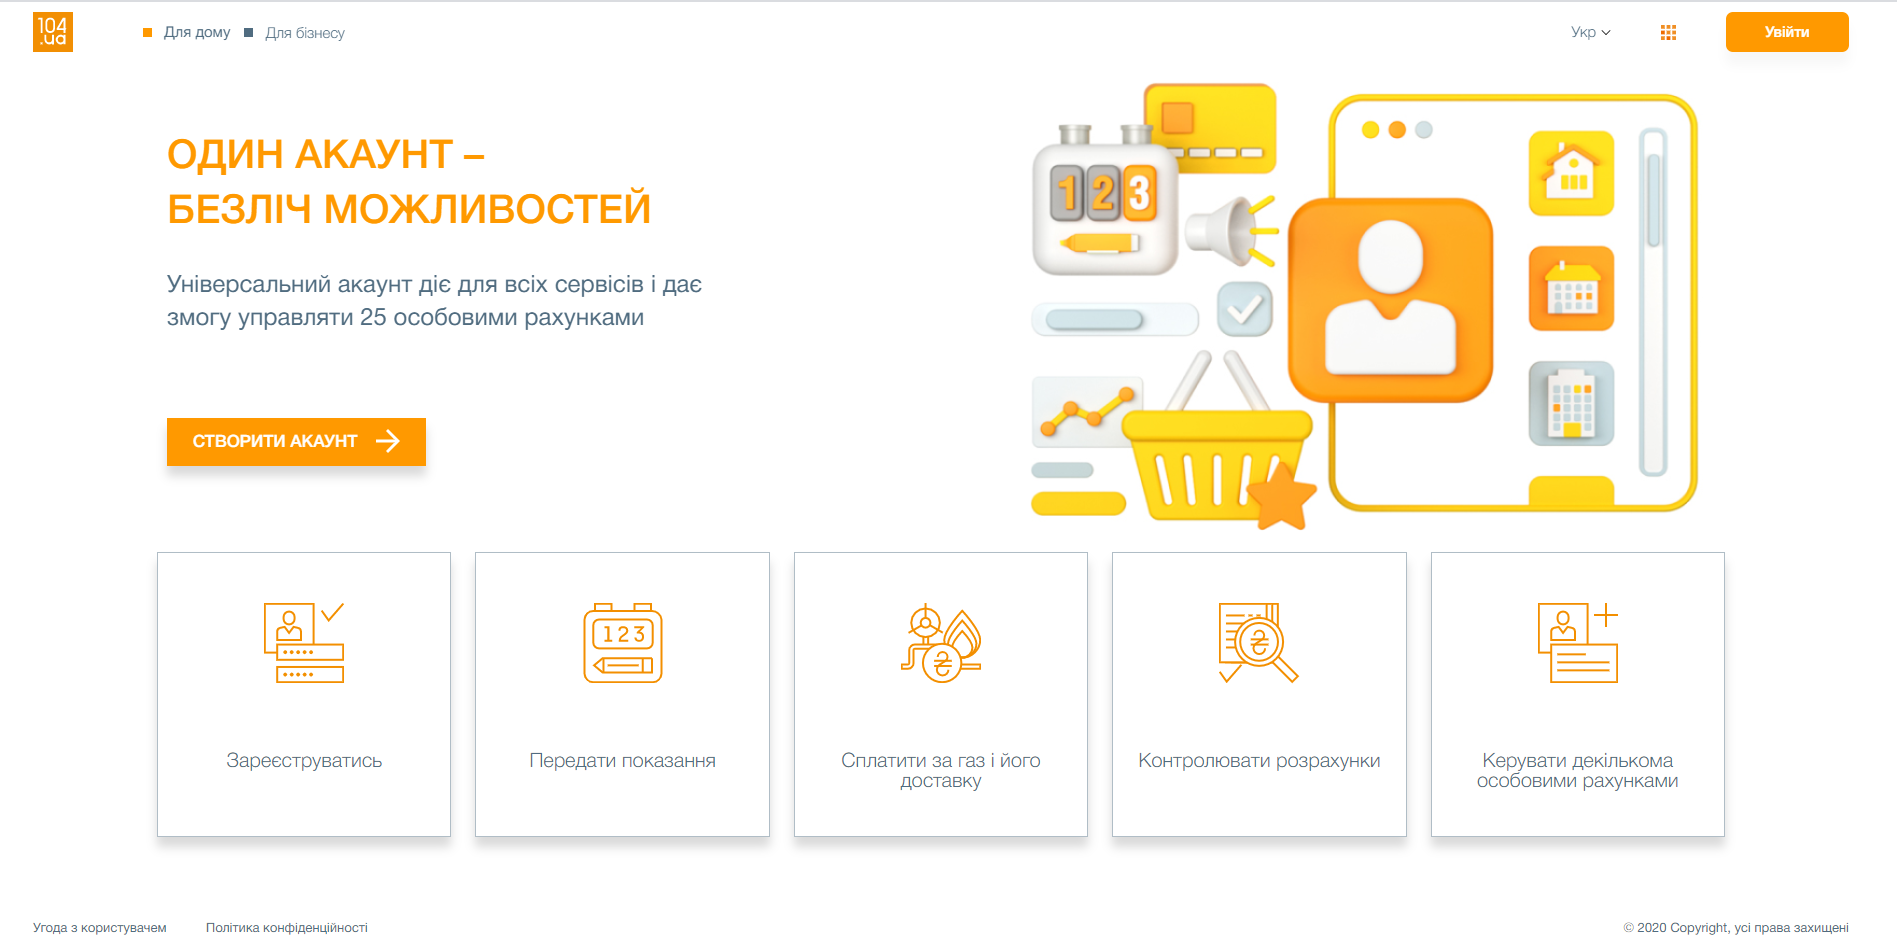 Более 192 тыс клиентов "Днепрогаза" оценили преимущества онлайн платформы 104.ua